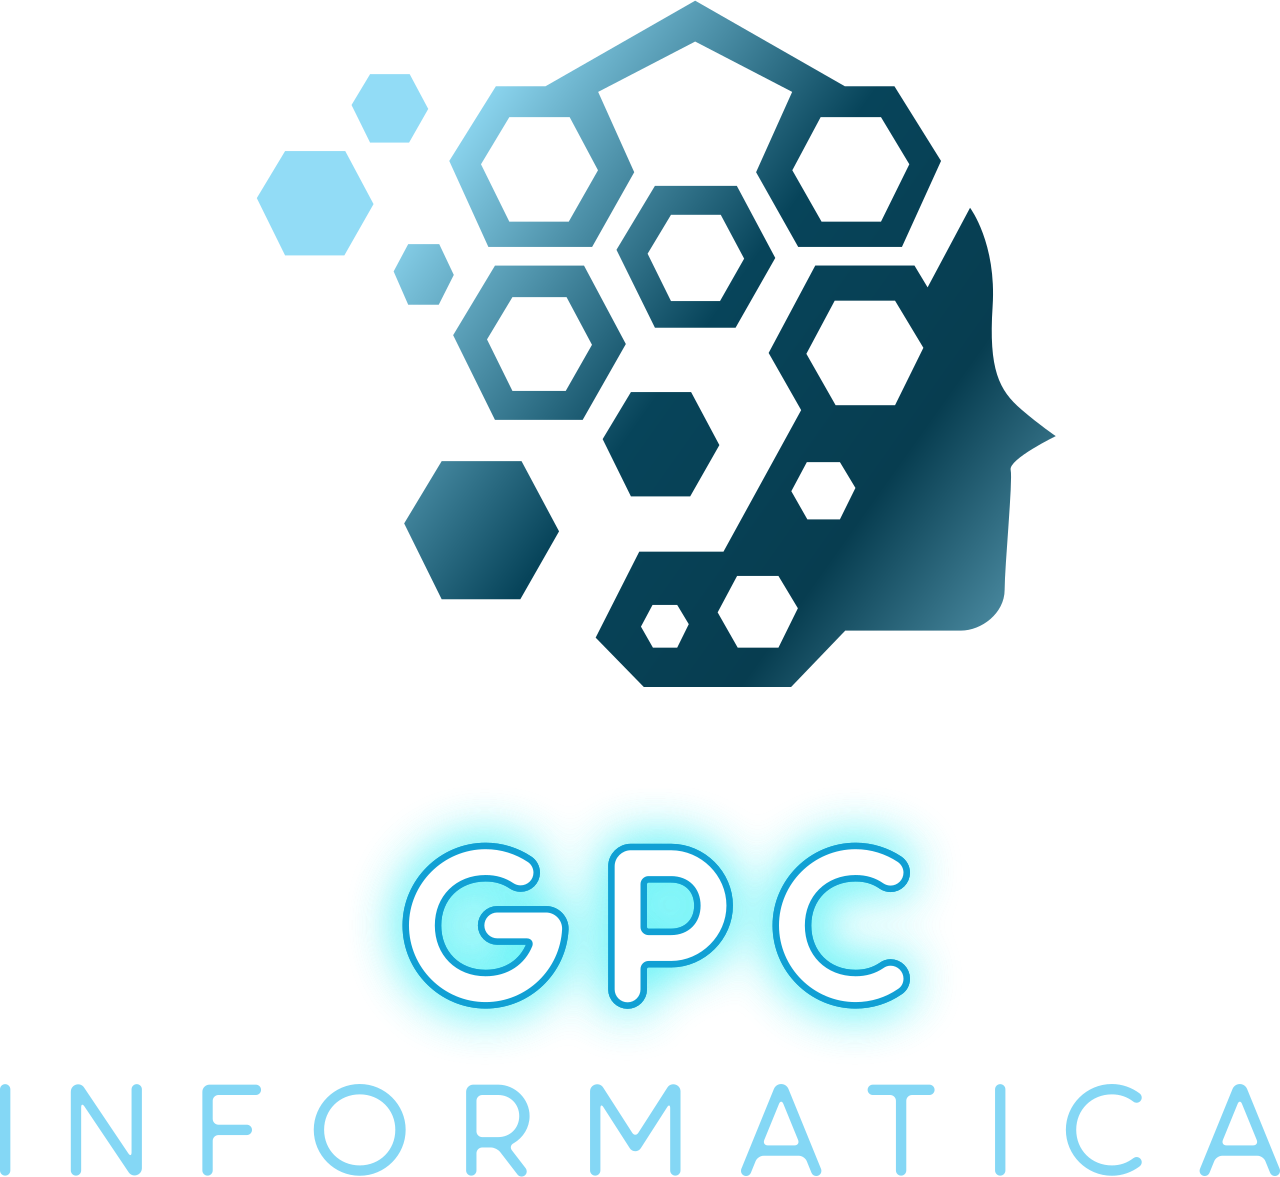 GPC's logo